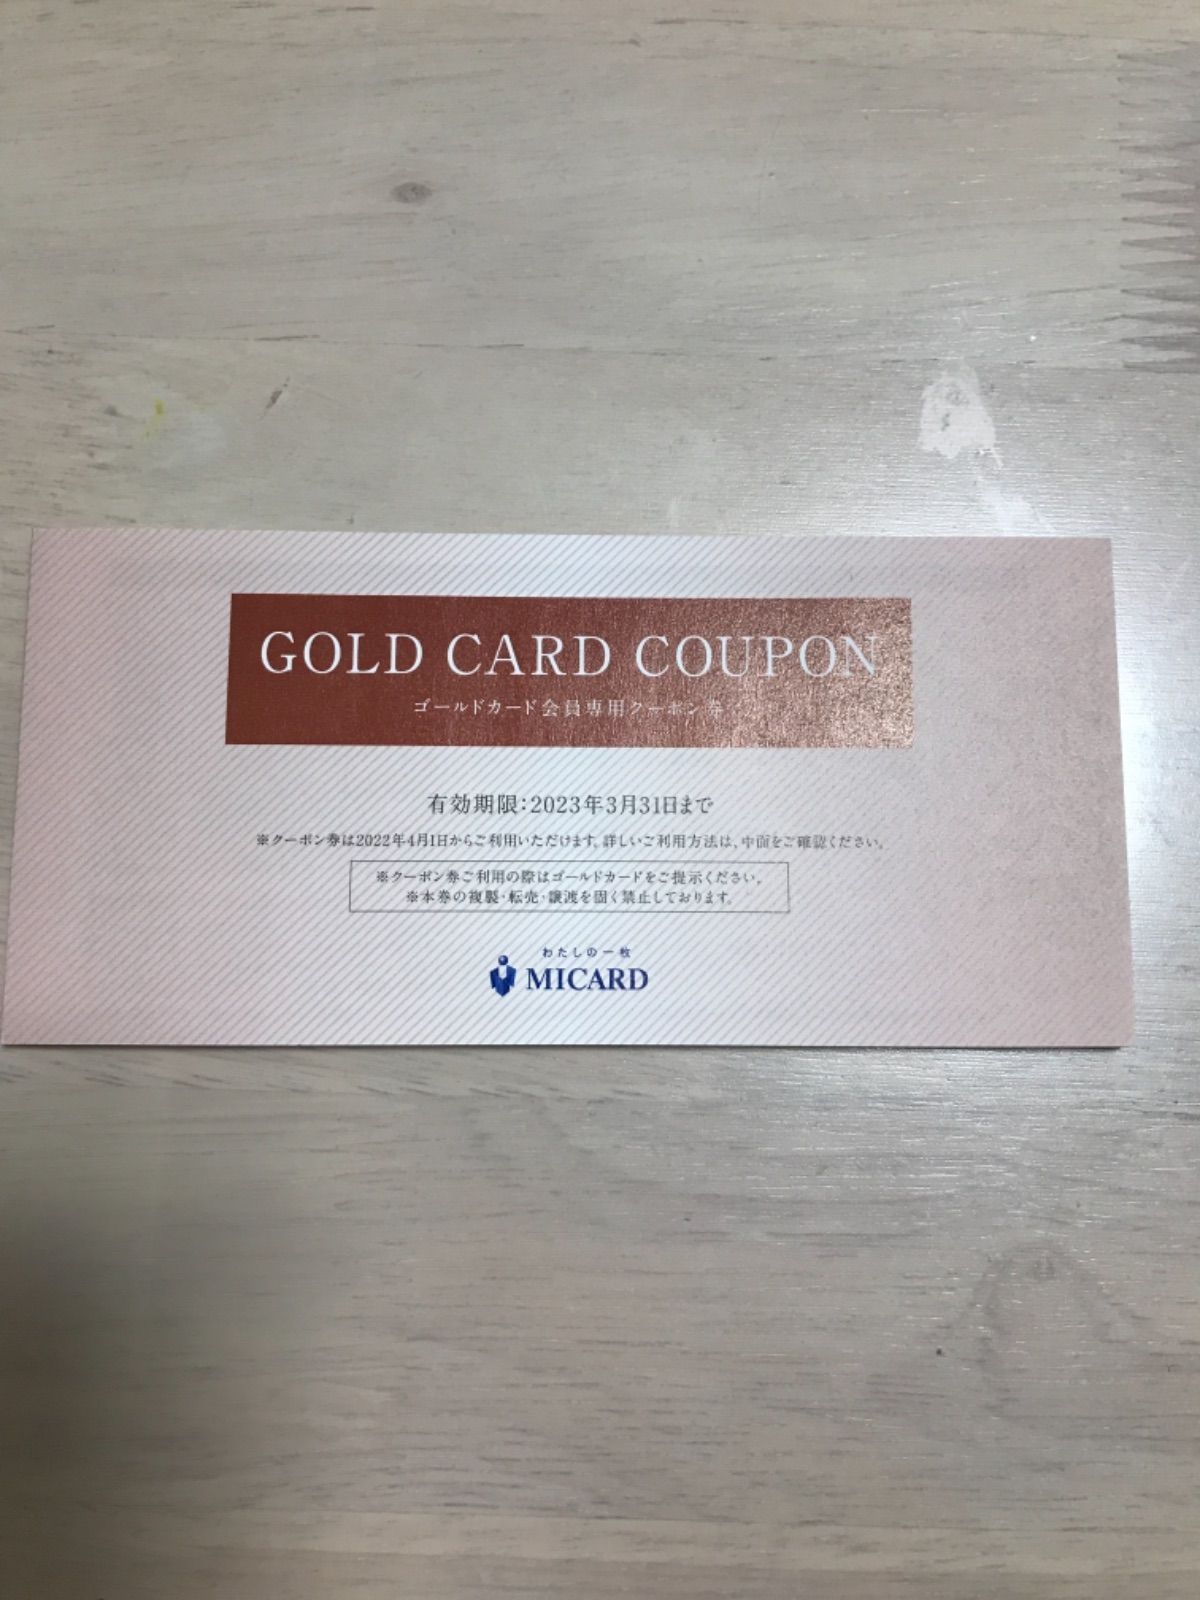 gold card coupon エムアイゴールドカード会員専用クーポン券 - その他